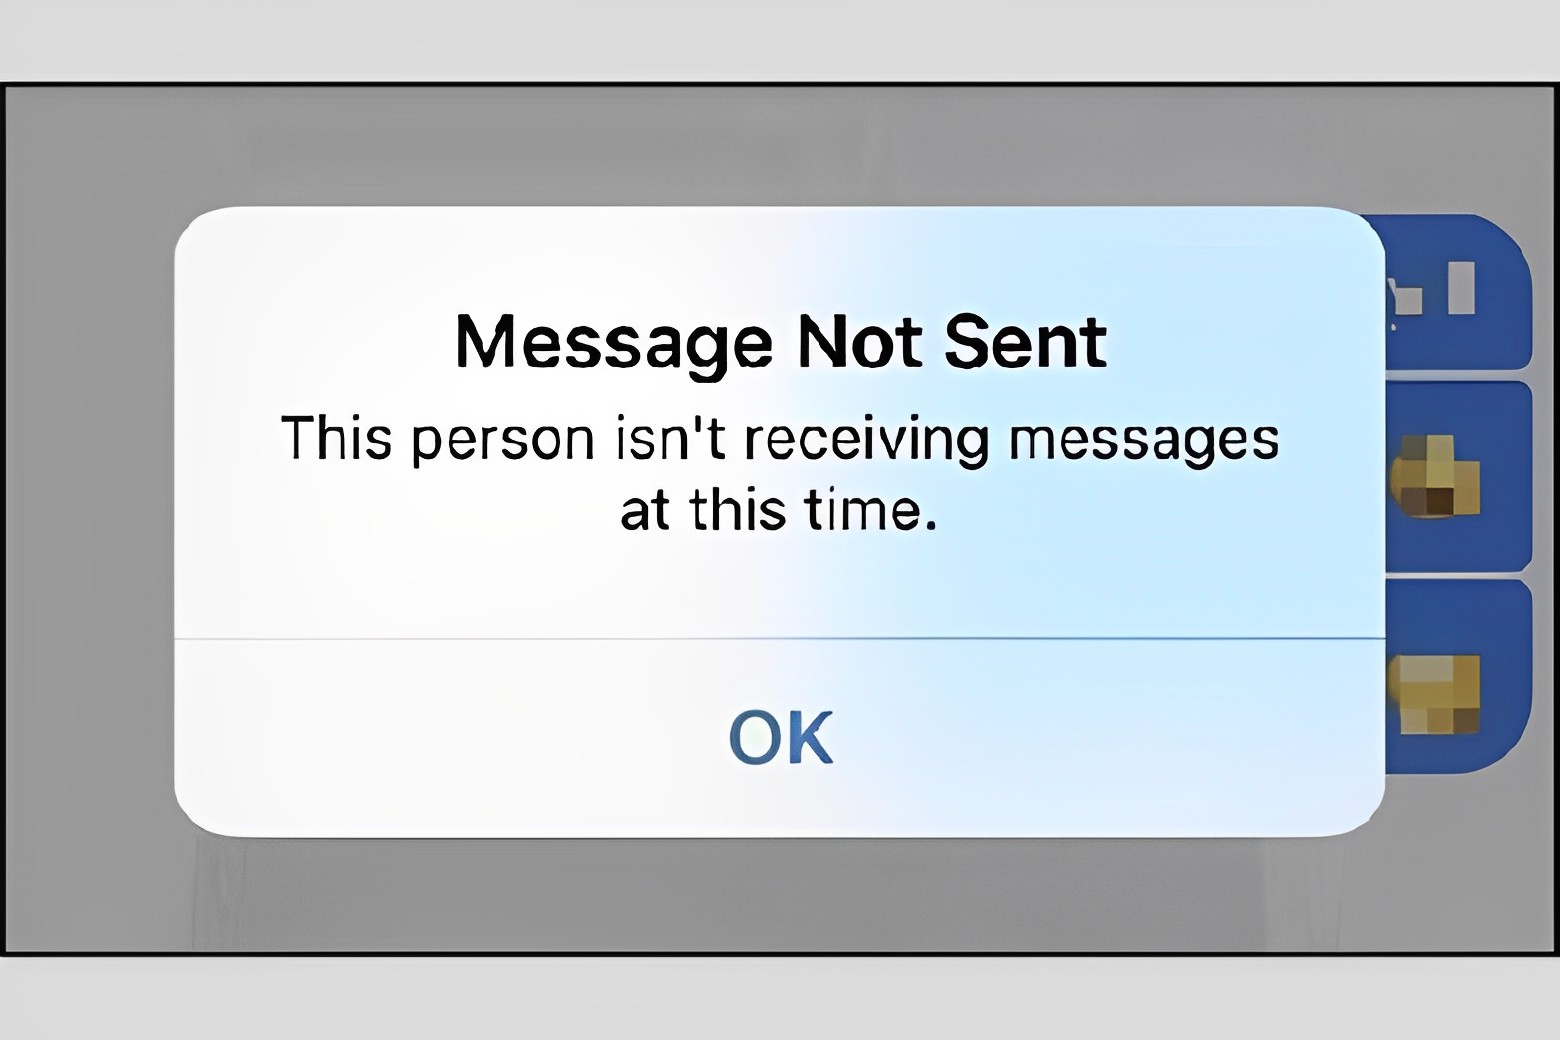 Tài khoản Messenger bị khóa hoặc bị xóa khiến người dùng không gửi được tin nhắn